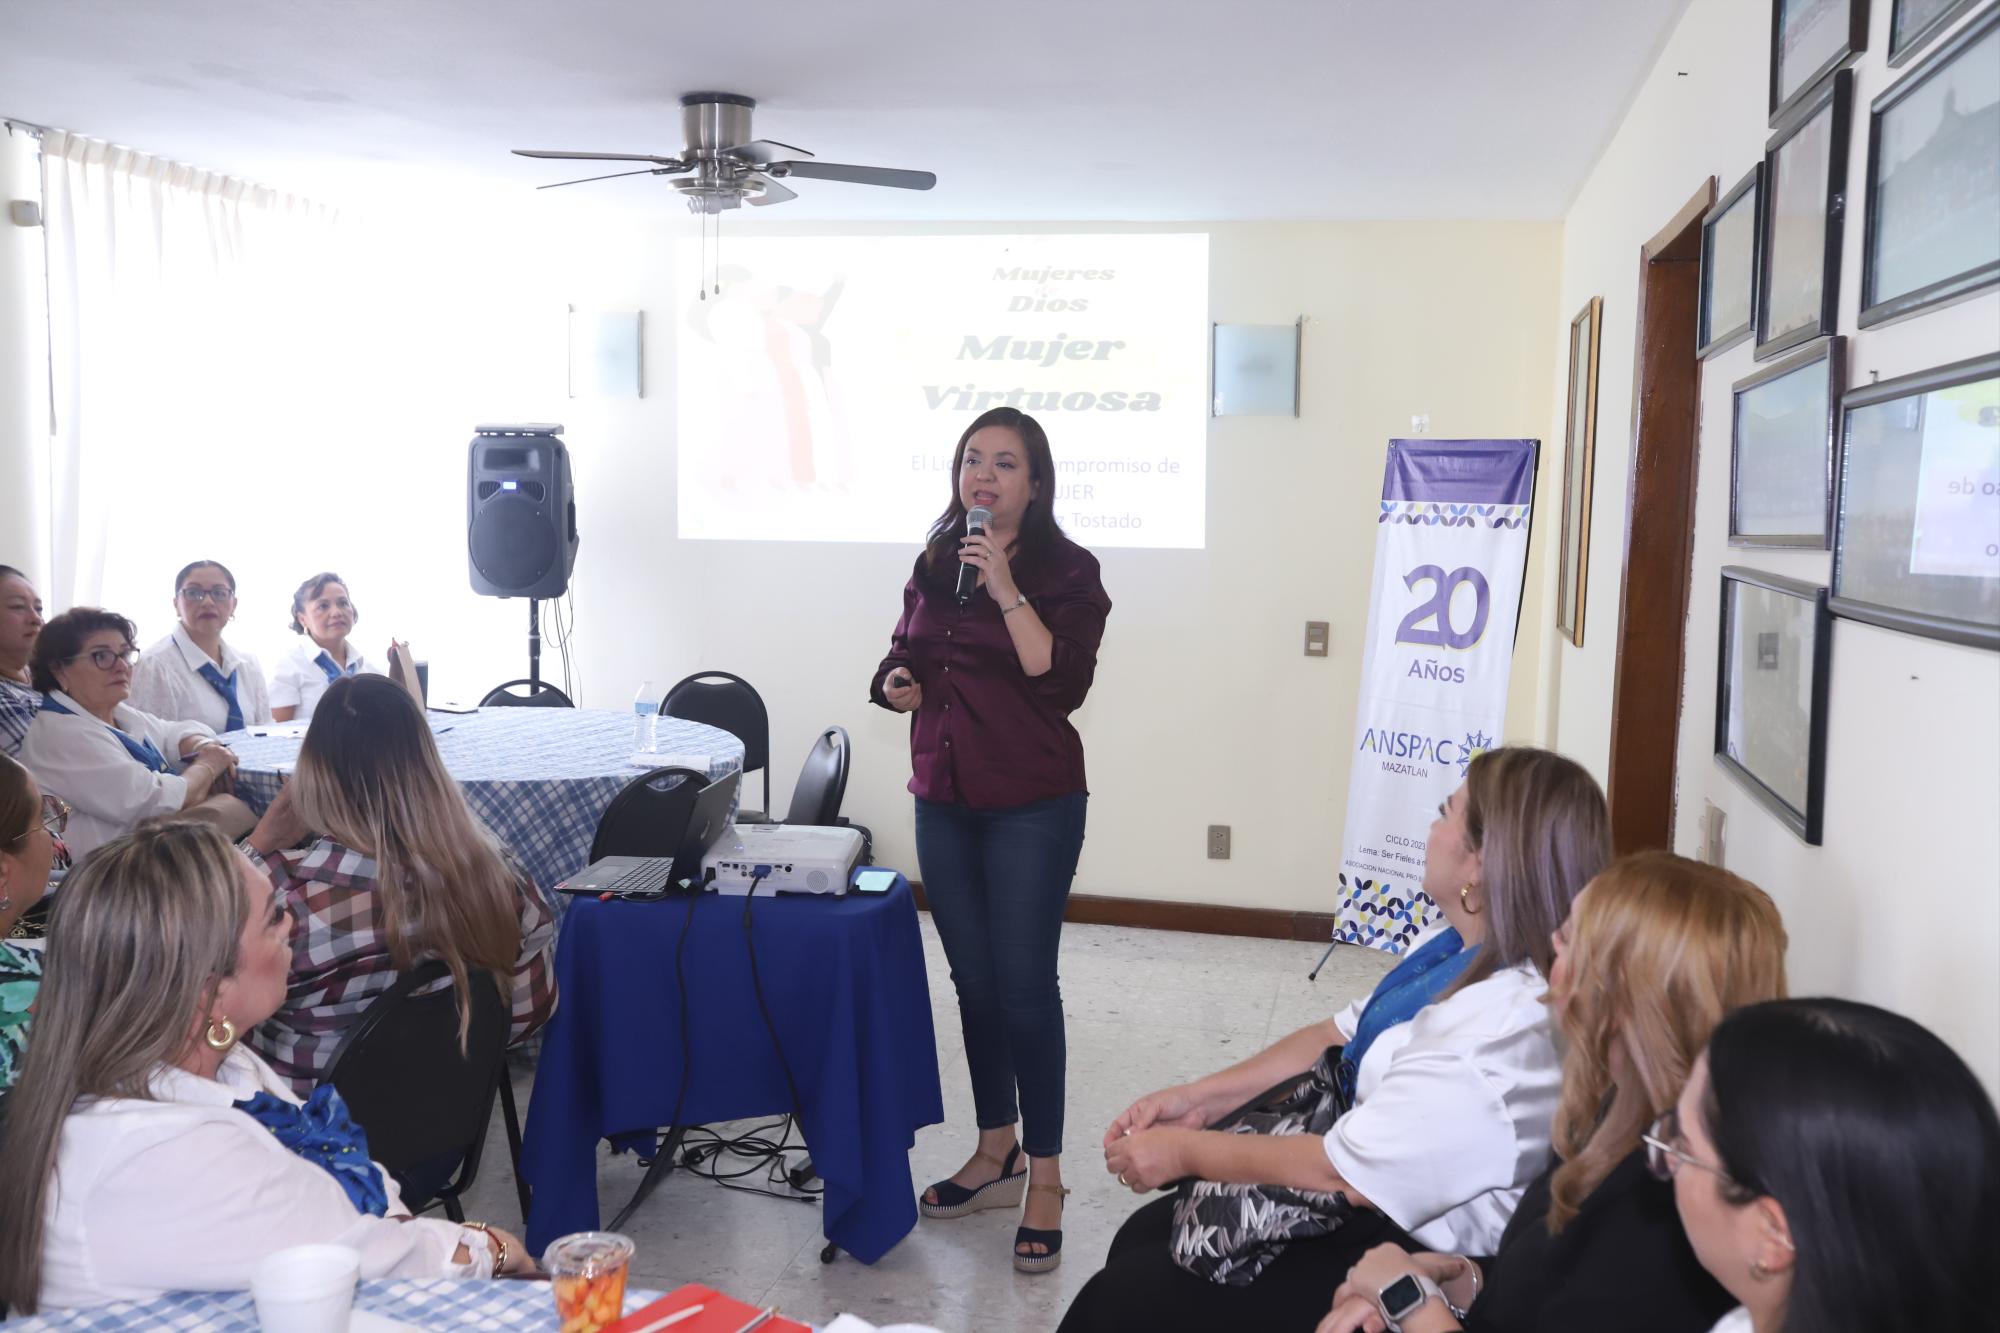 $!Paola Álvarez Tostado impartió el mini seminario “El liderazgo y compromiso de ser mujer”.